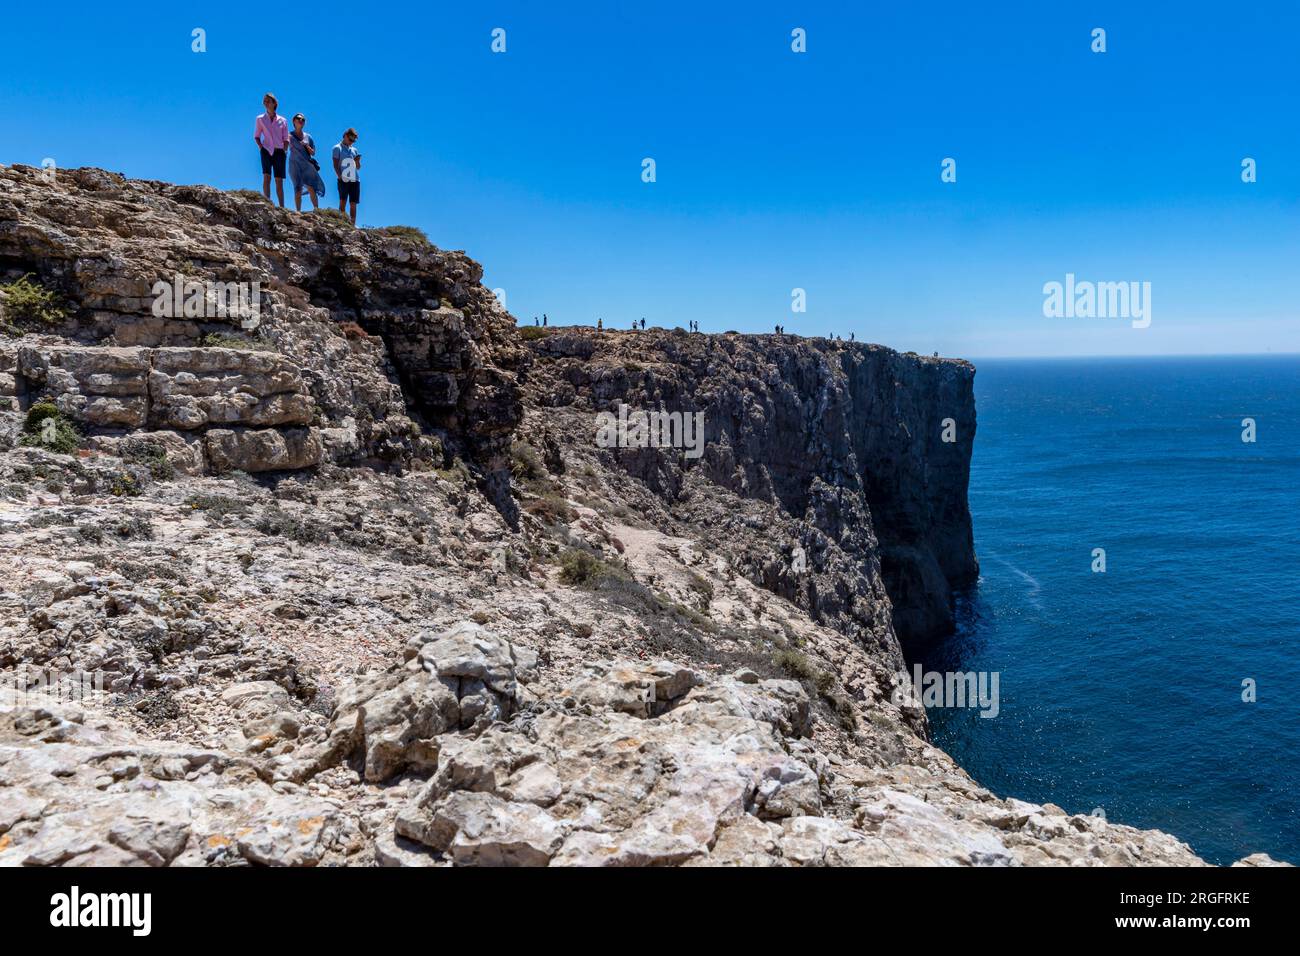 trois personnes sur les rochers au-dessus de la mer Banque D'Images